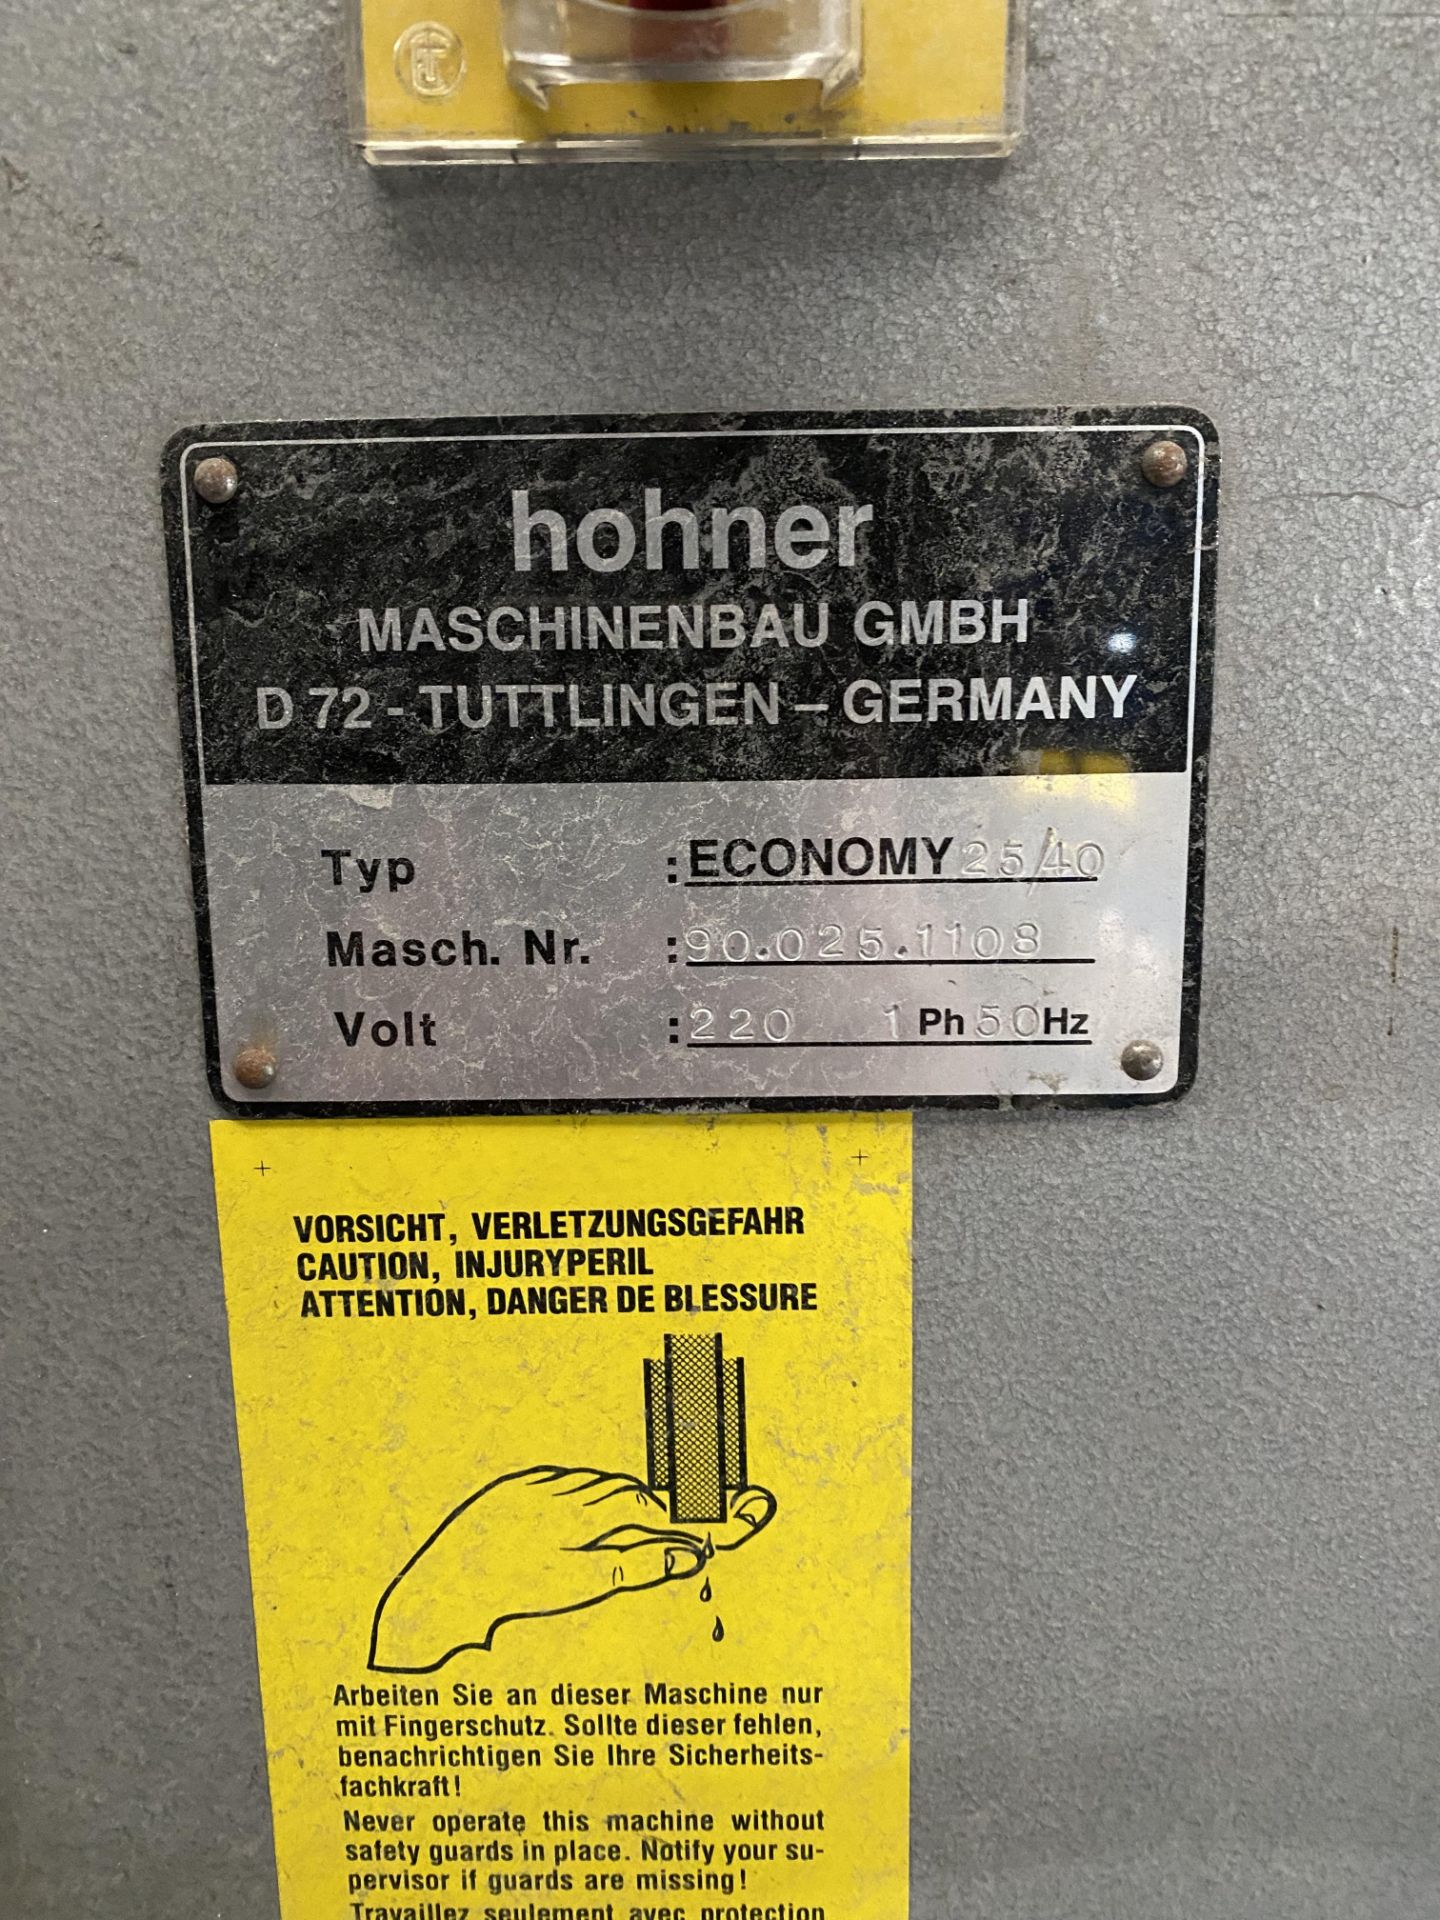 Hohner Economy 25/40 wire stitcher, serial no. 90.025.1108 - Bild 2 aus 5